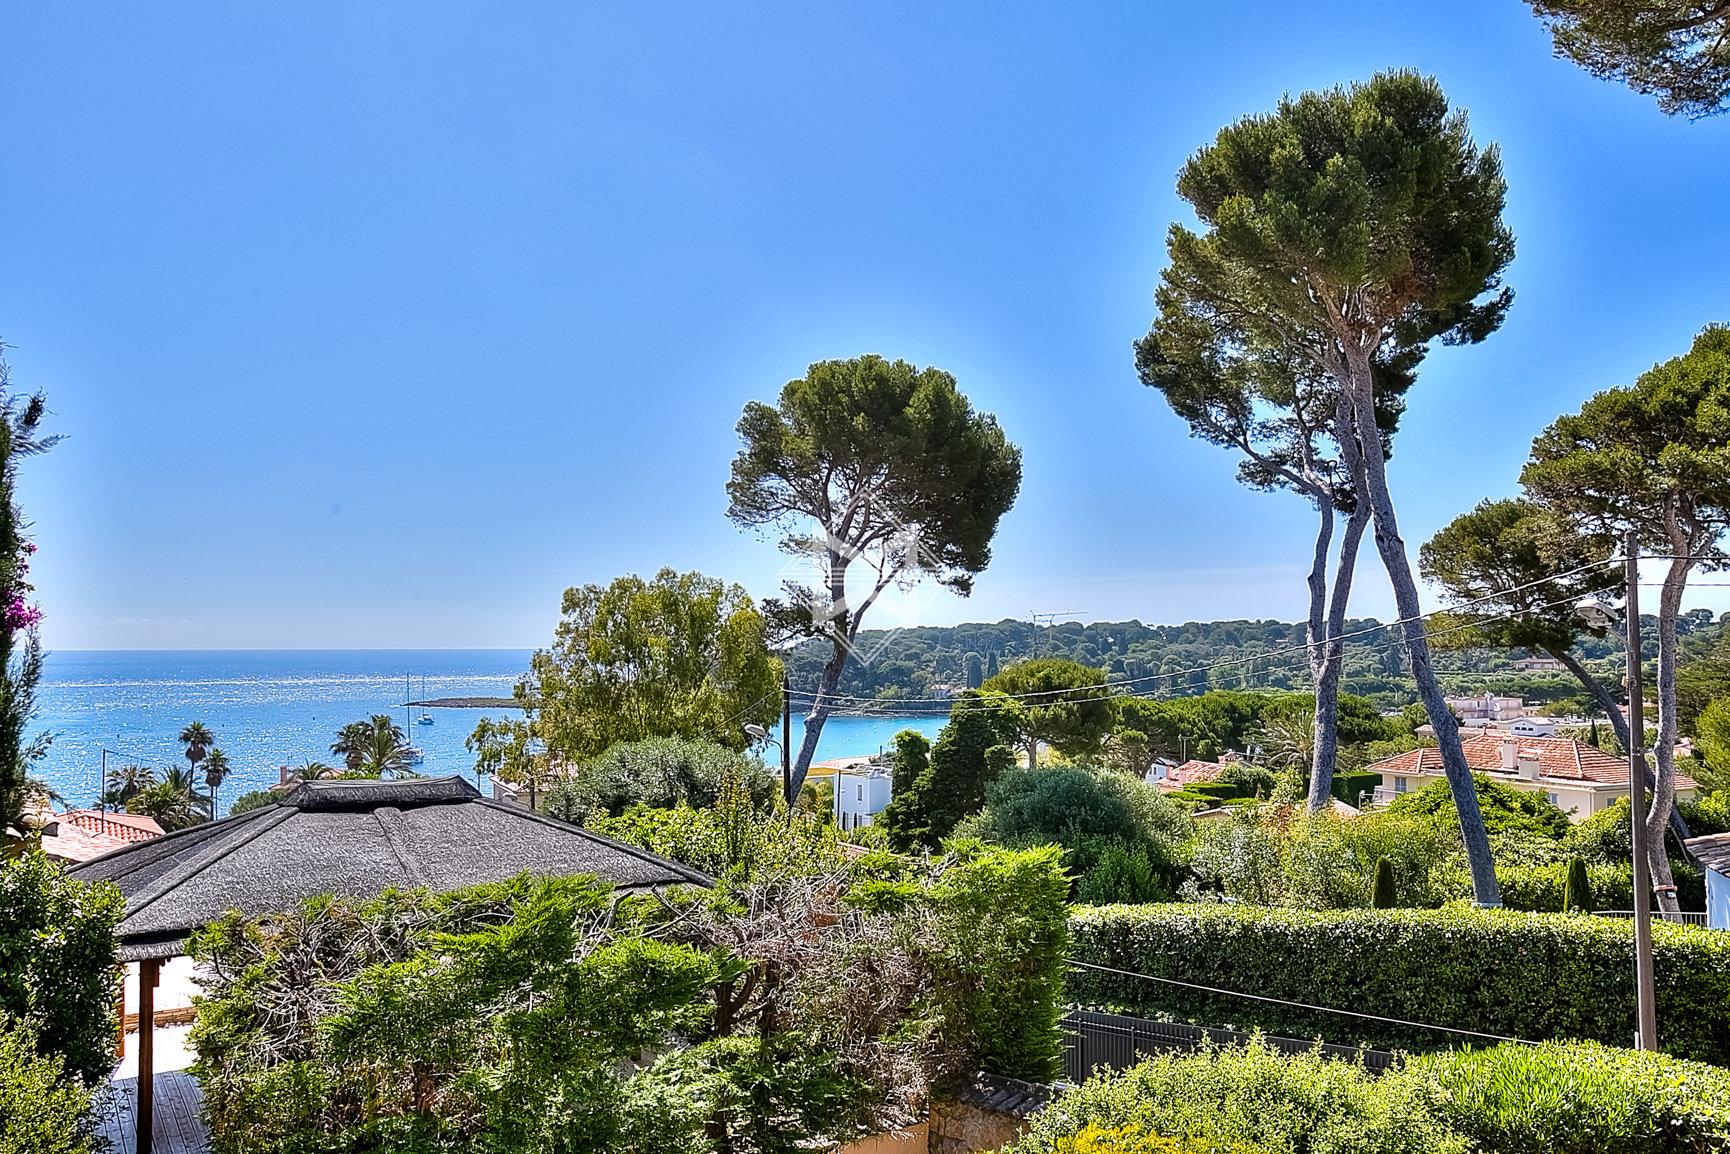 Sale Villa Cap d'Antibes - 3 Bedrooms - Sea view - Provencal villa ...